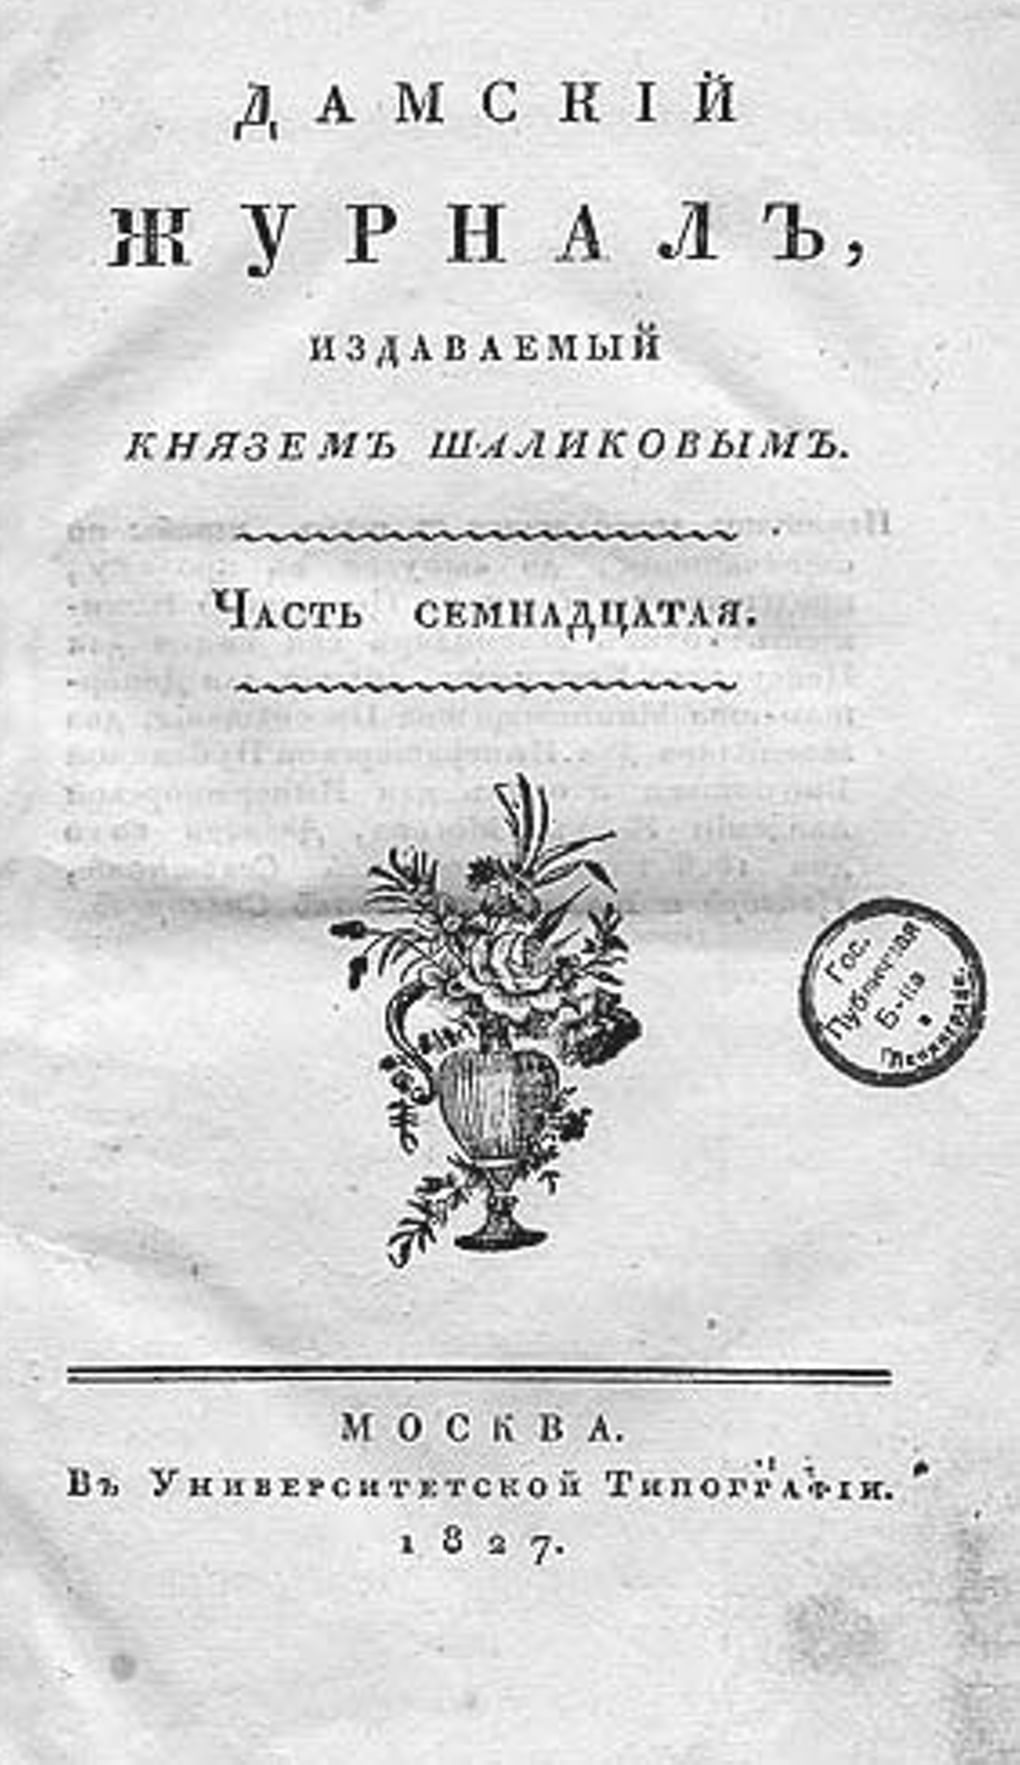 Титульный лист журнала «Дамский журнал». Часть семнадцатая. 1827 год. Фотография: wikimedia.org